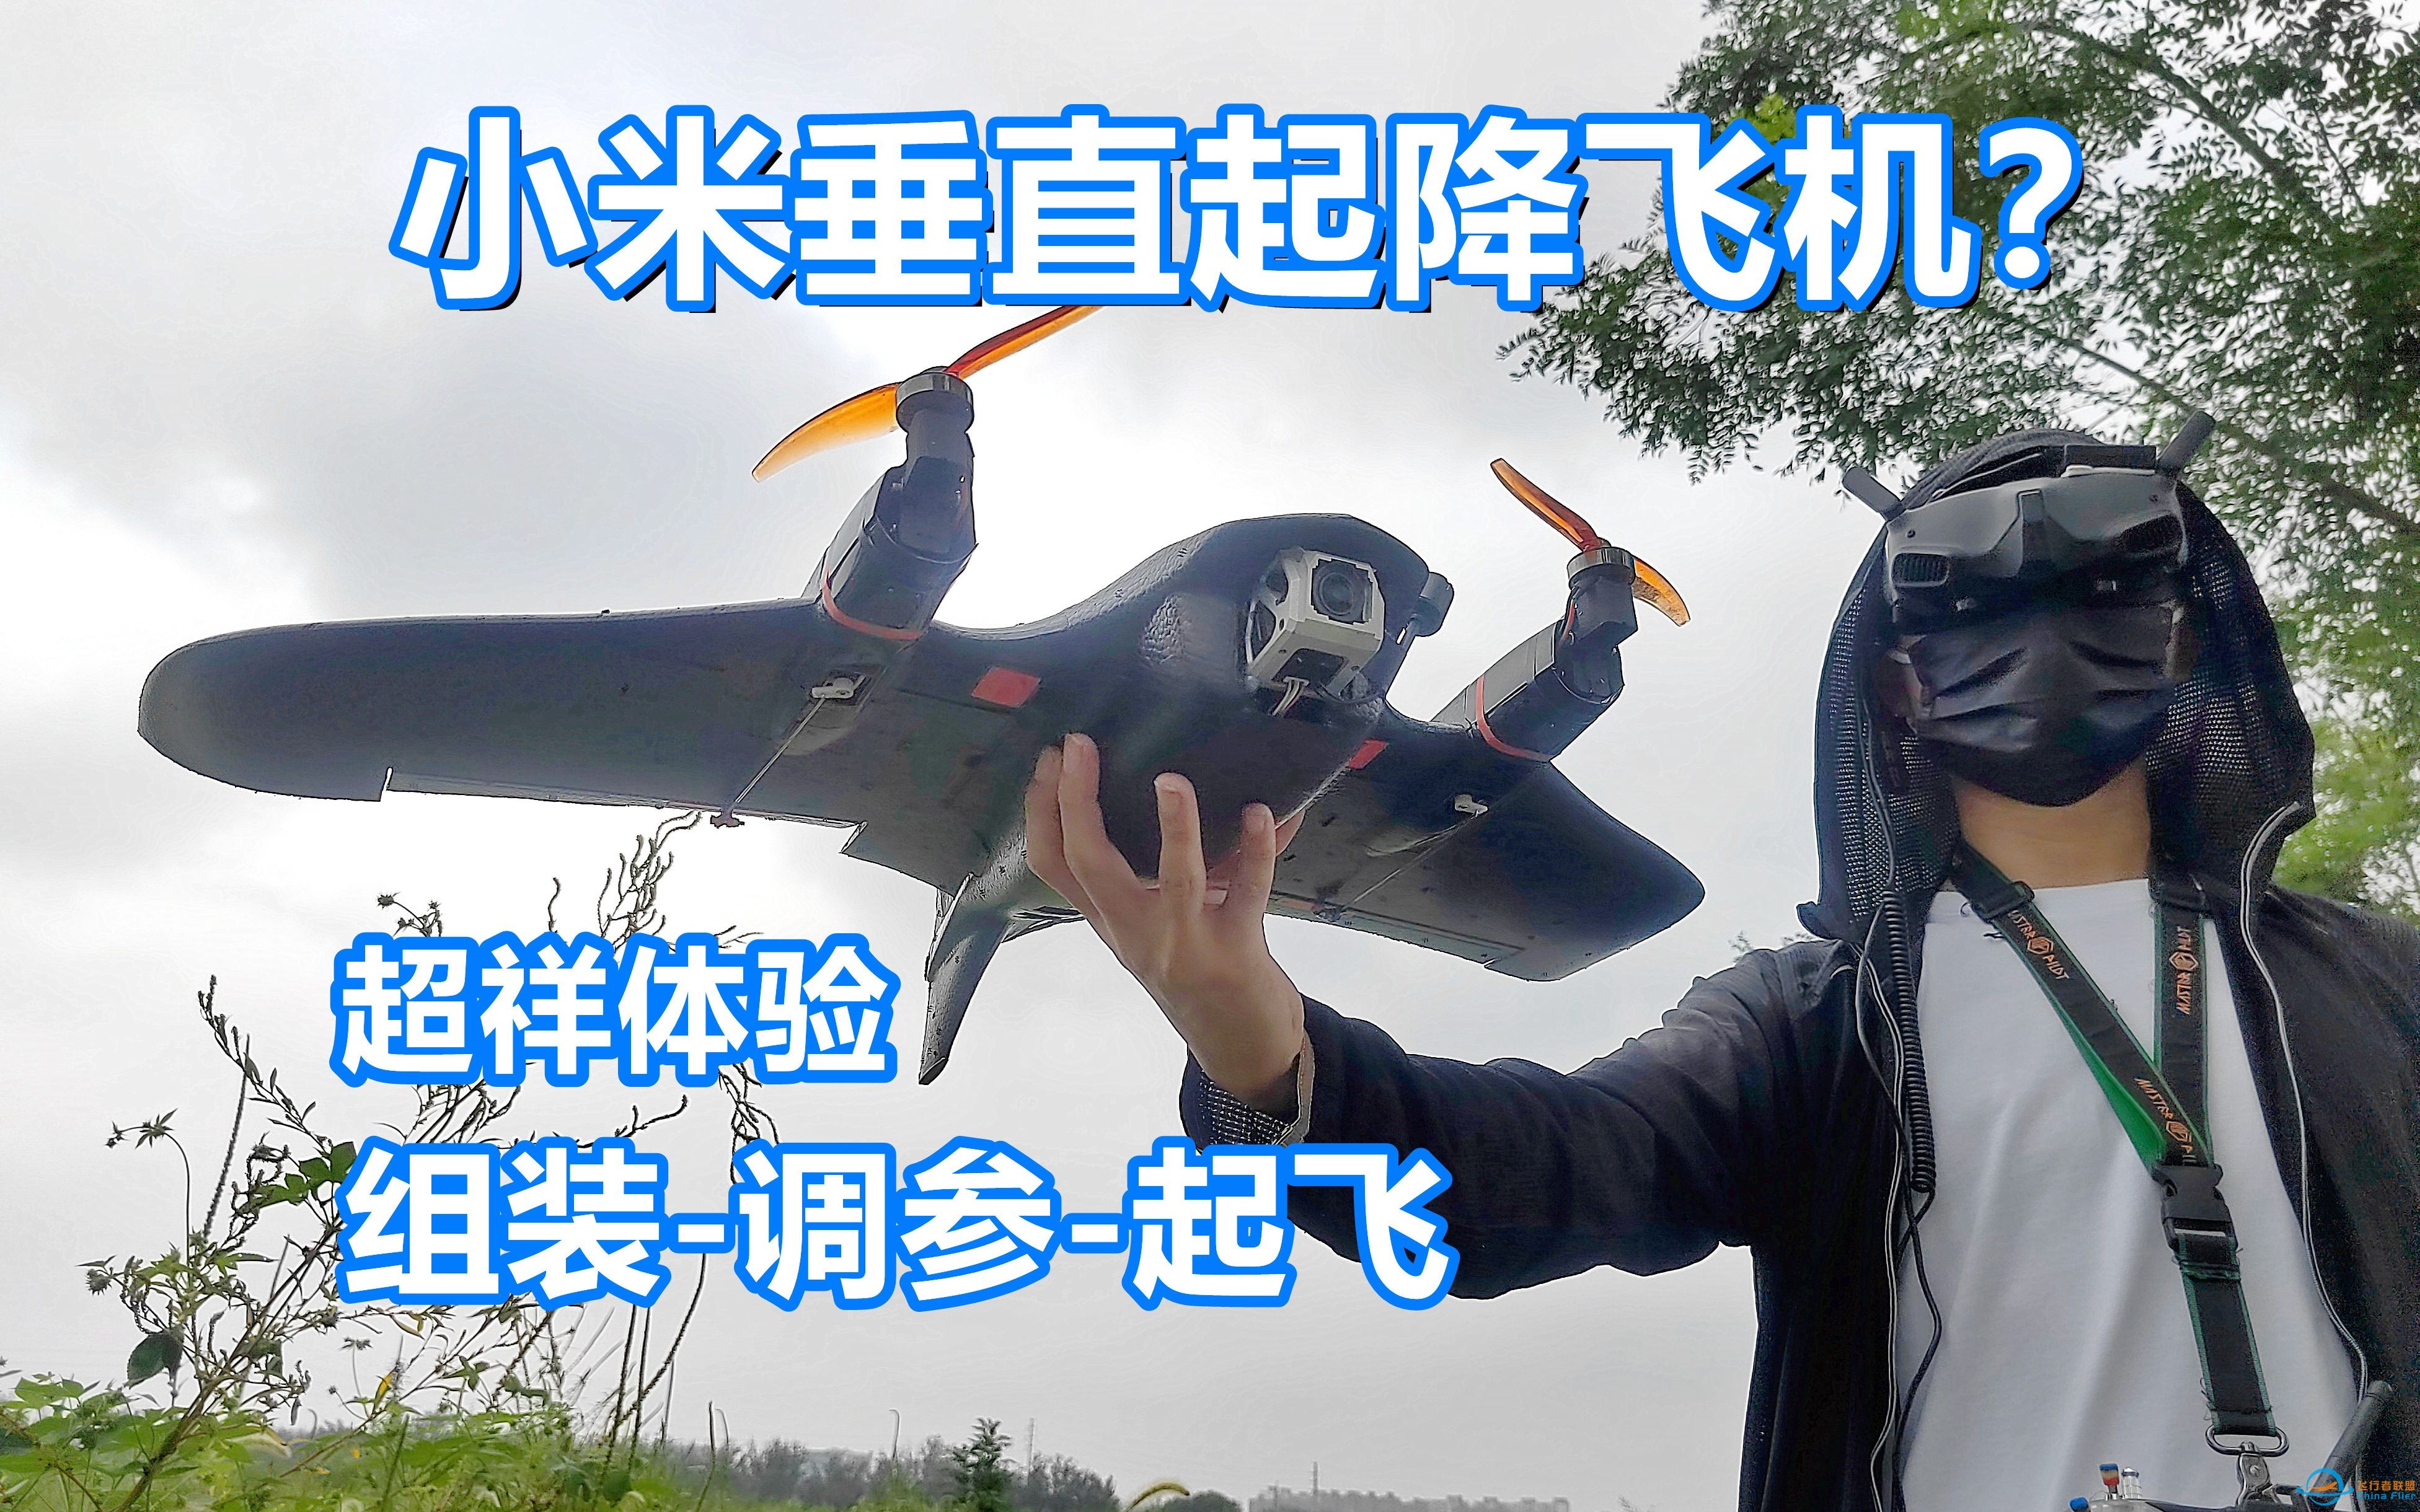 小米竟然出垂起固定翼了？组装飞行全面讲解飞米Manta无人机-1.jpg